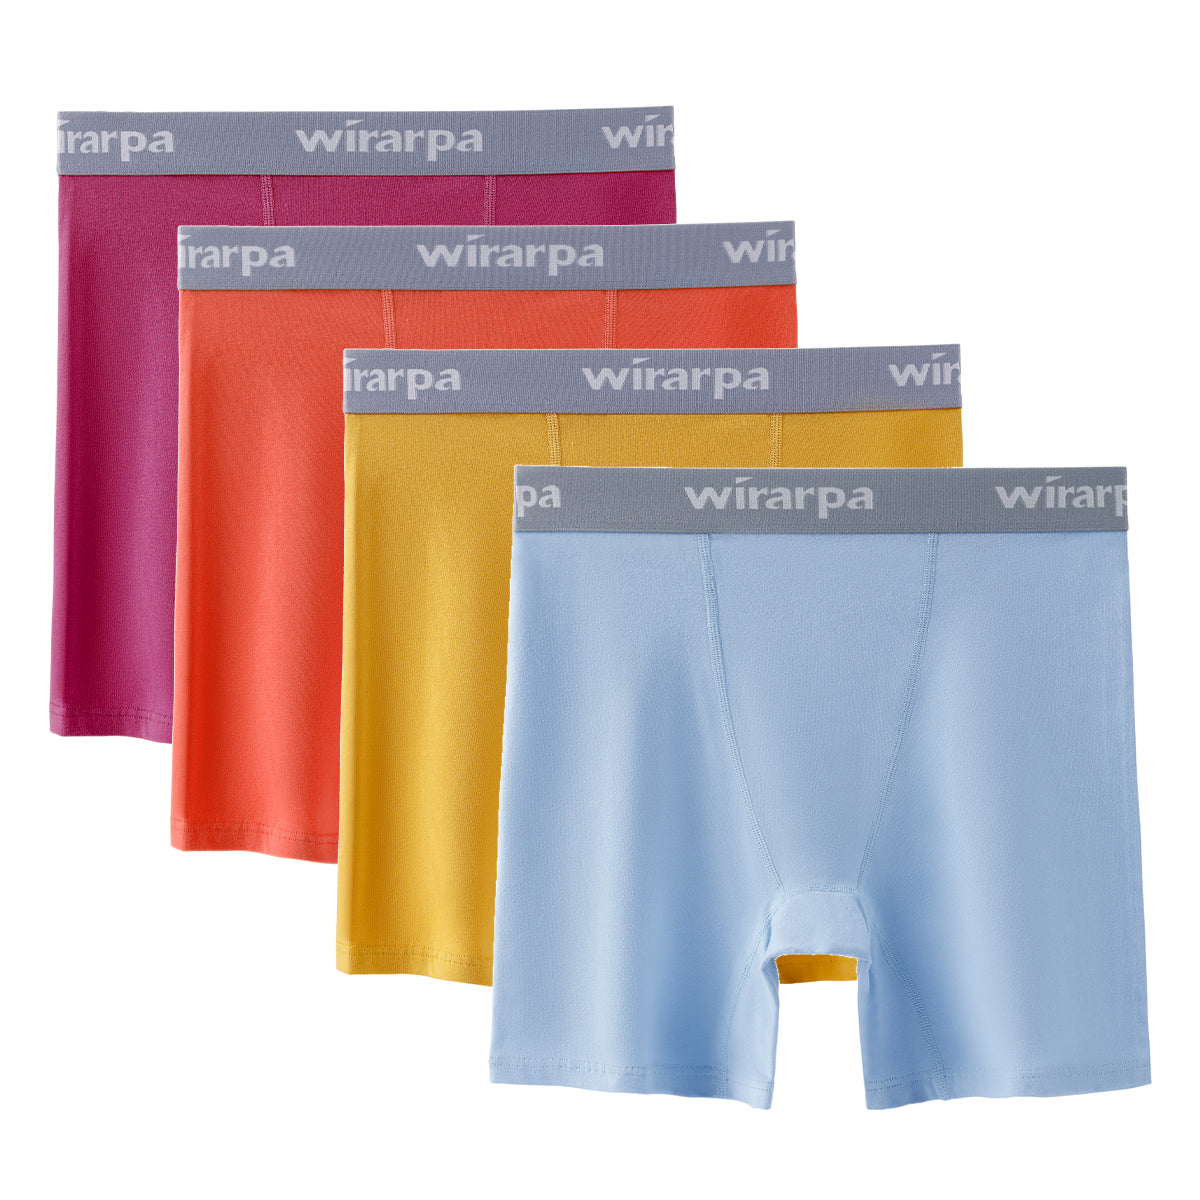  Wirarpa Womens Cotton Boxer Briefs Underwear Boy